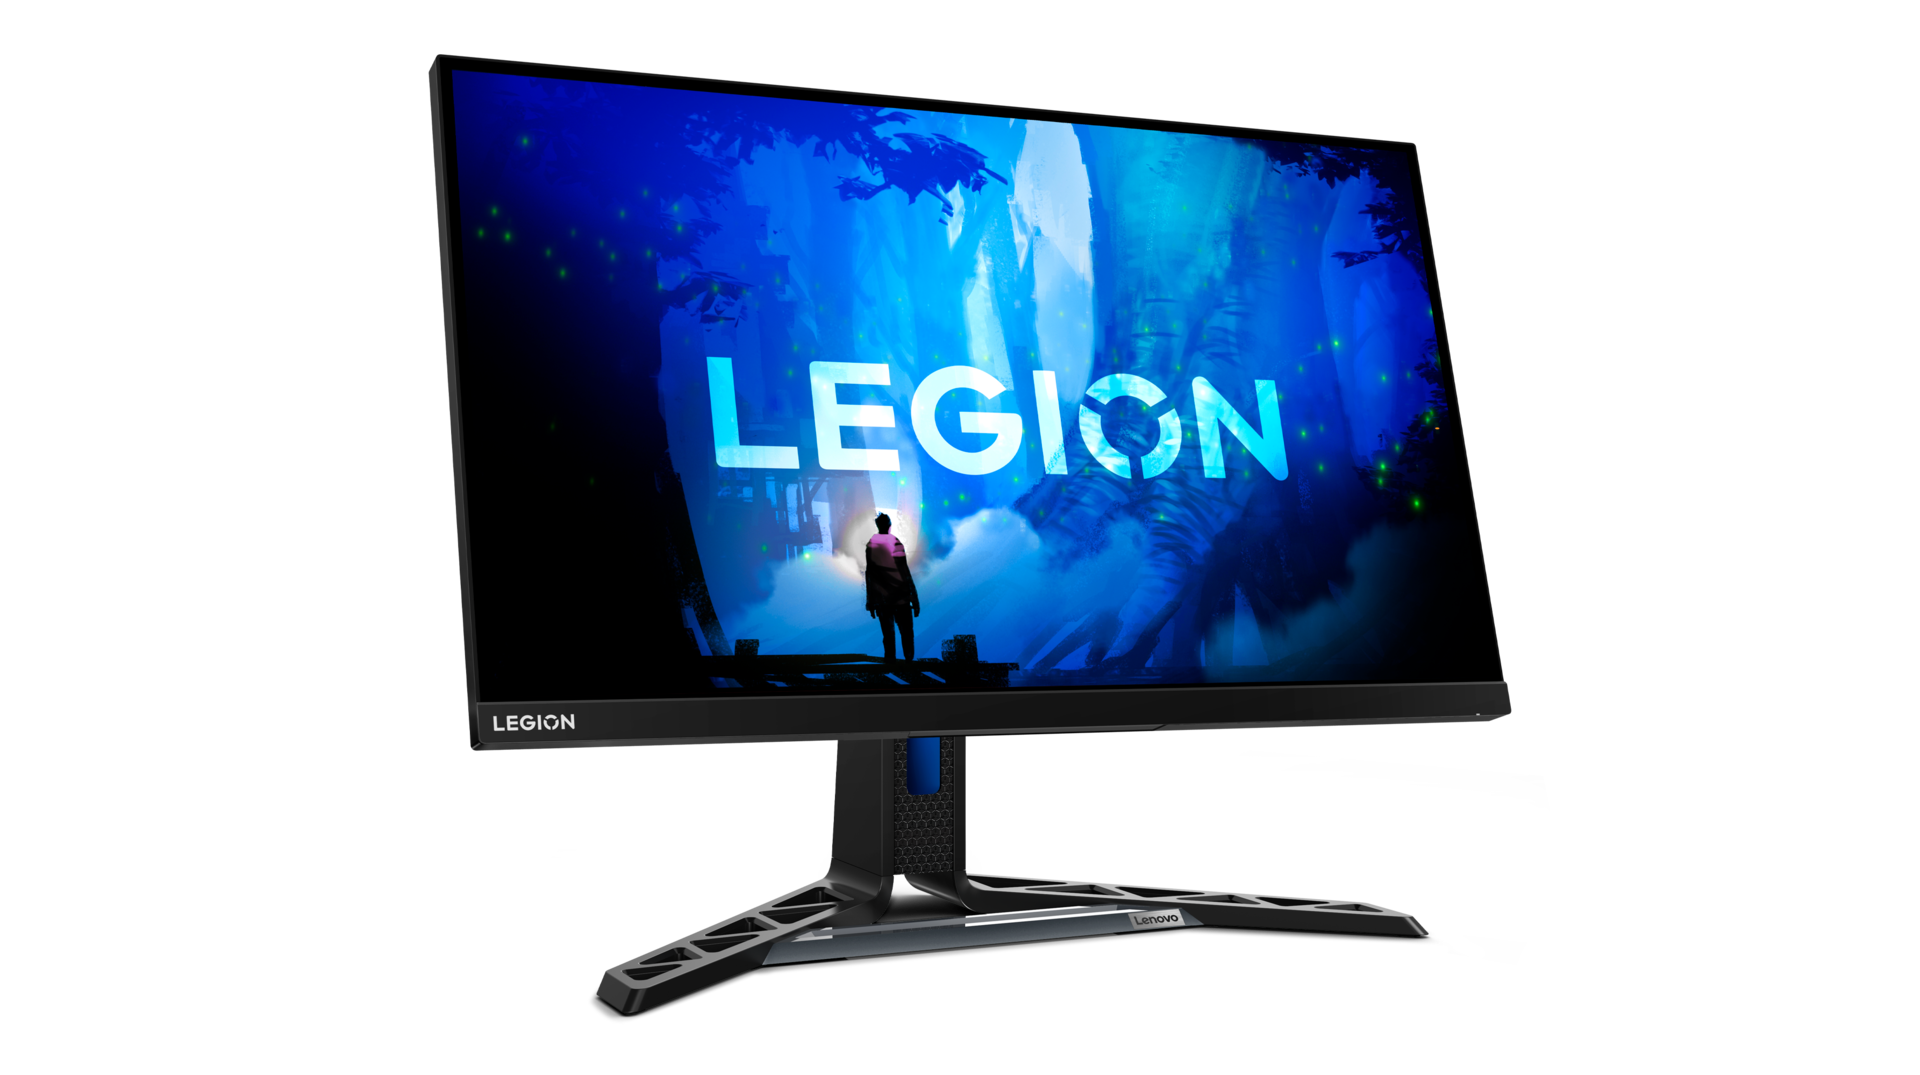 Lenovo presenta dos monitores Legion con resolución QHD, hasta 280 Hz y calibración de fábrica, a un precio desde 399 dólares